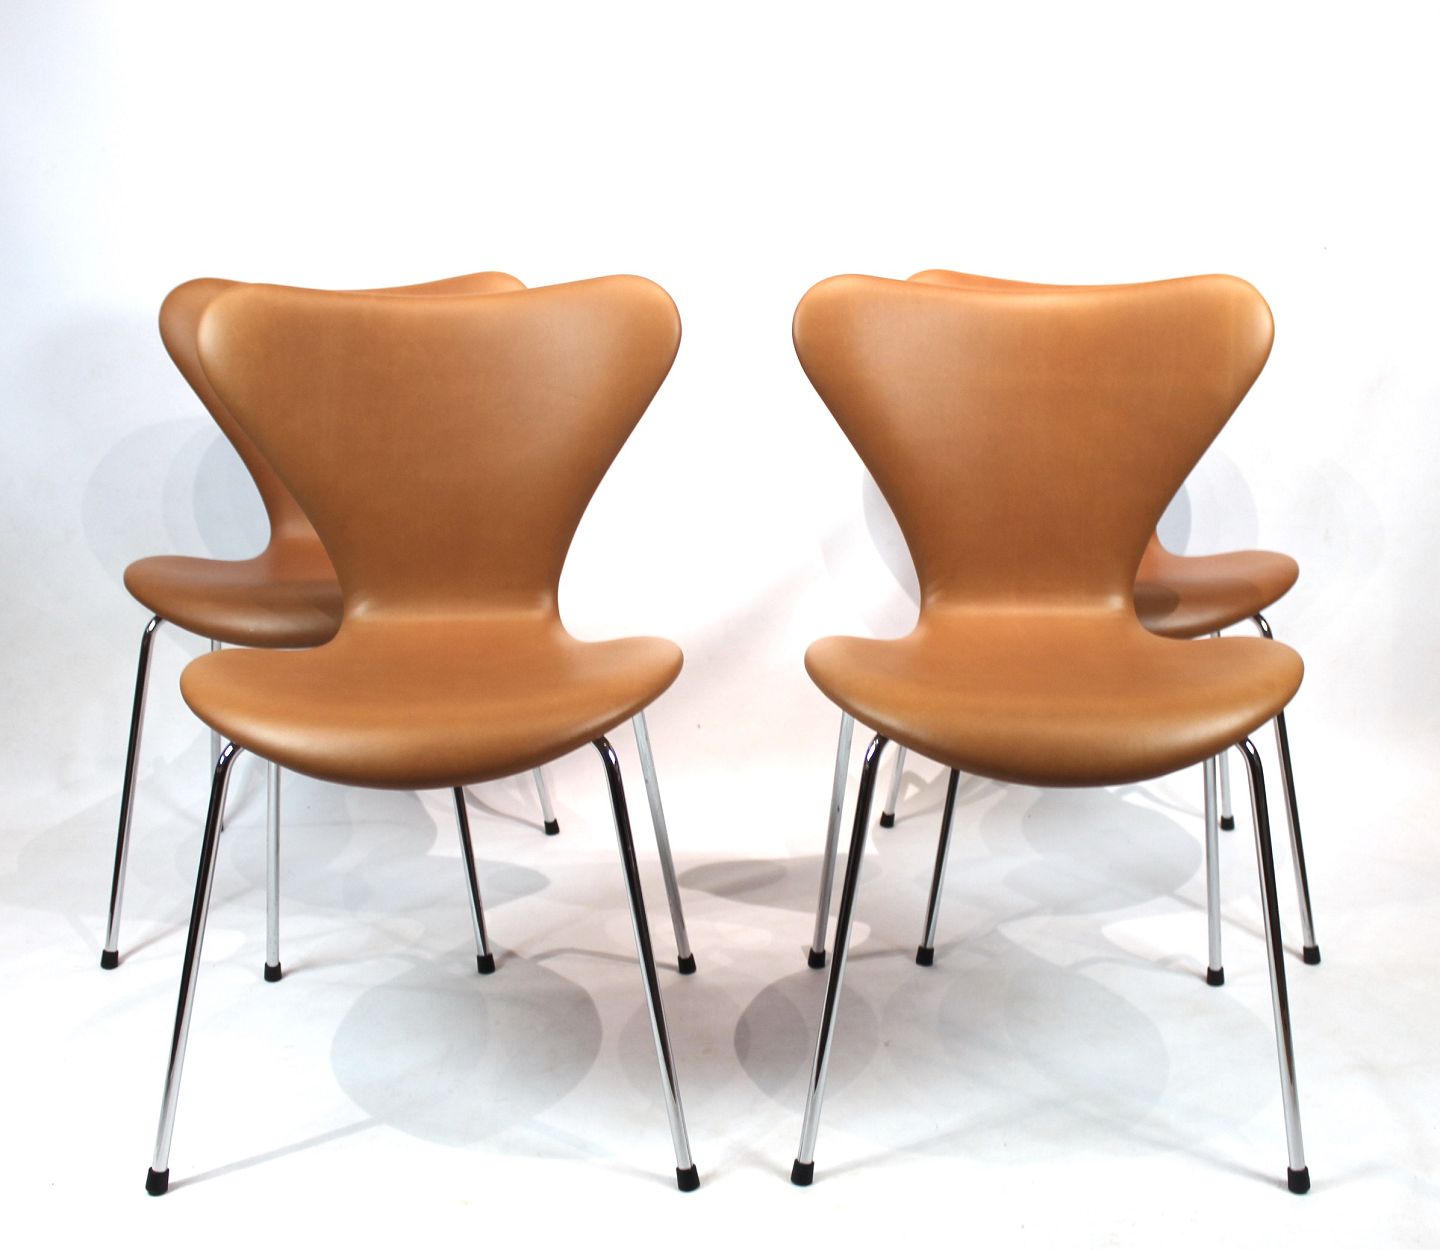 Et sæt af 4 stole, model 3107, designet af Arne Jacobsen og fremstillet ho - Osted Antik & Design